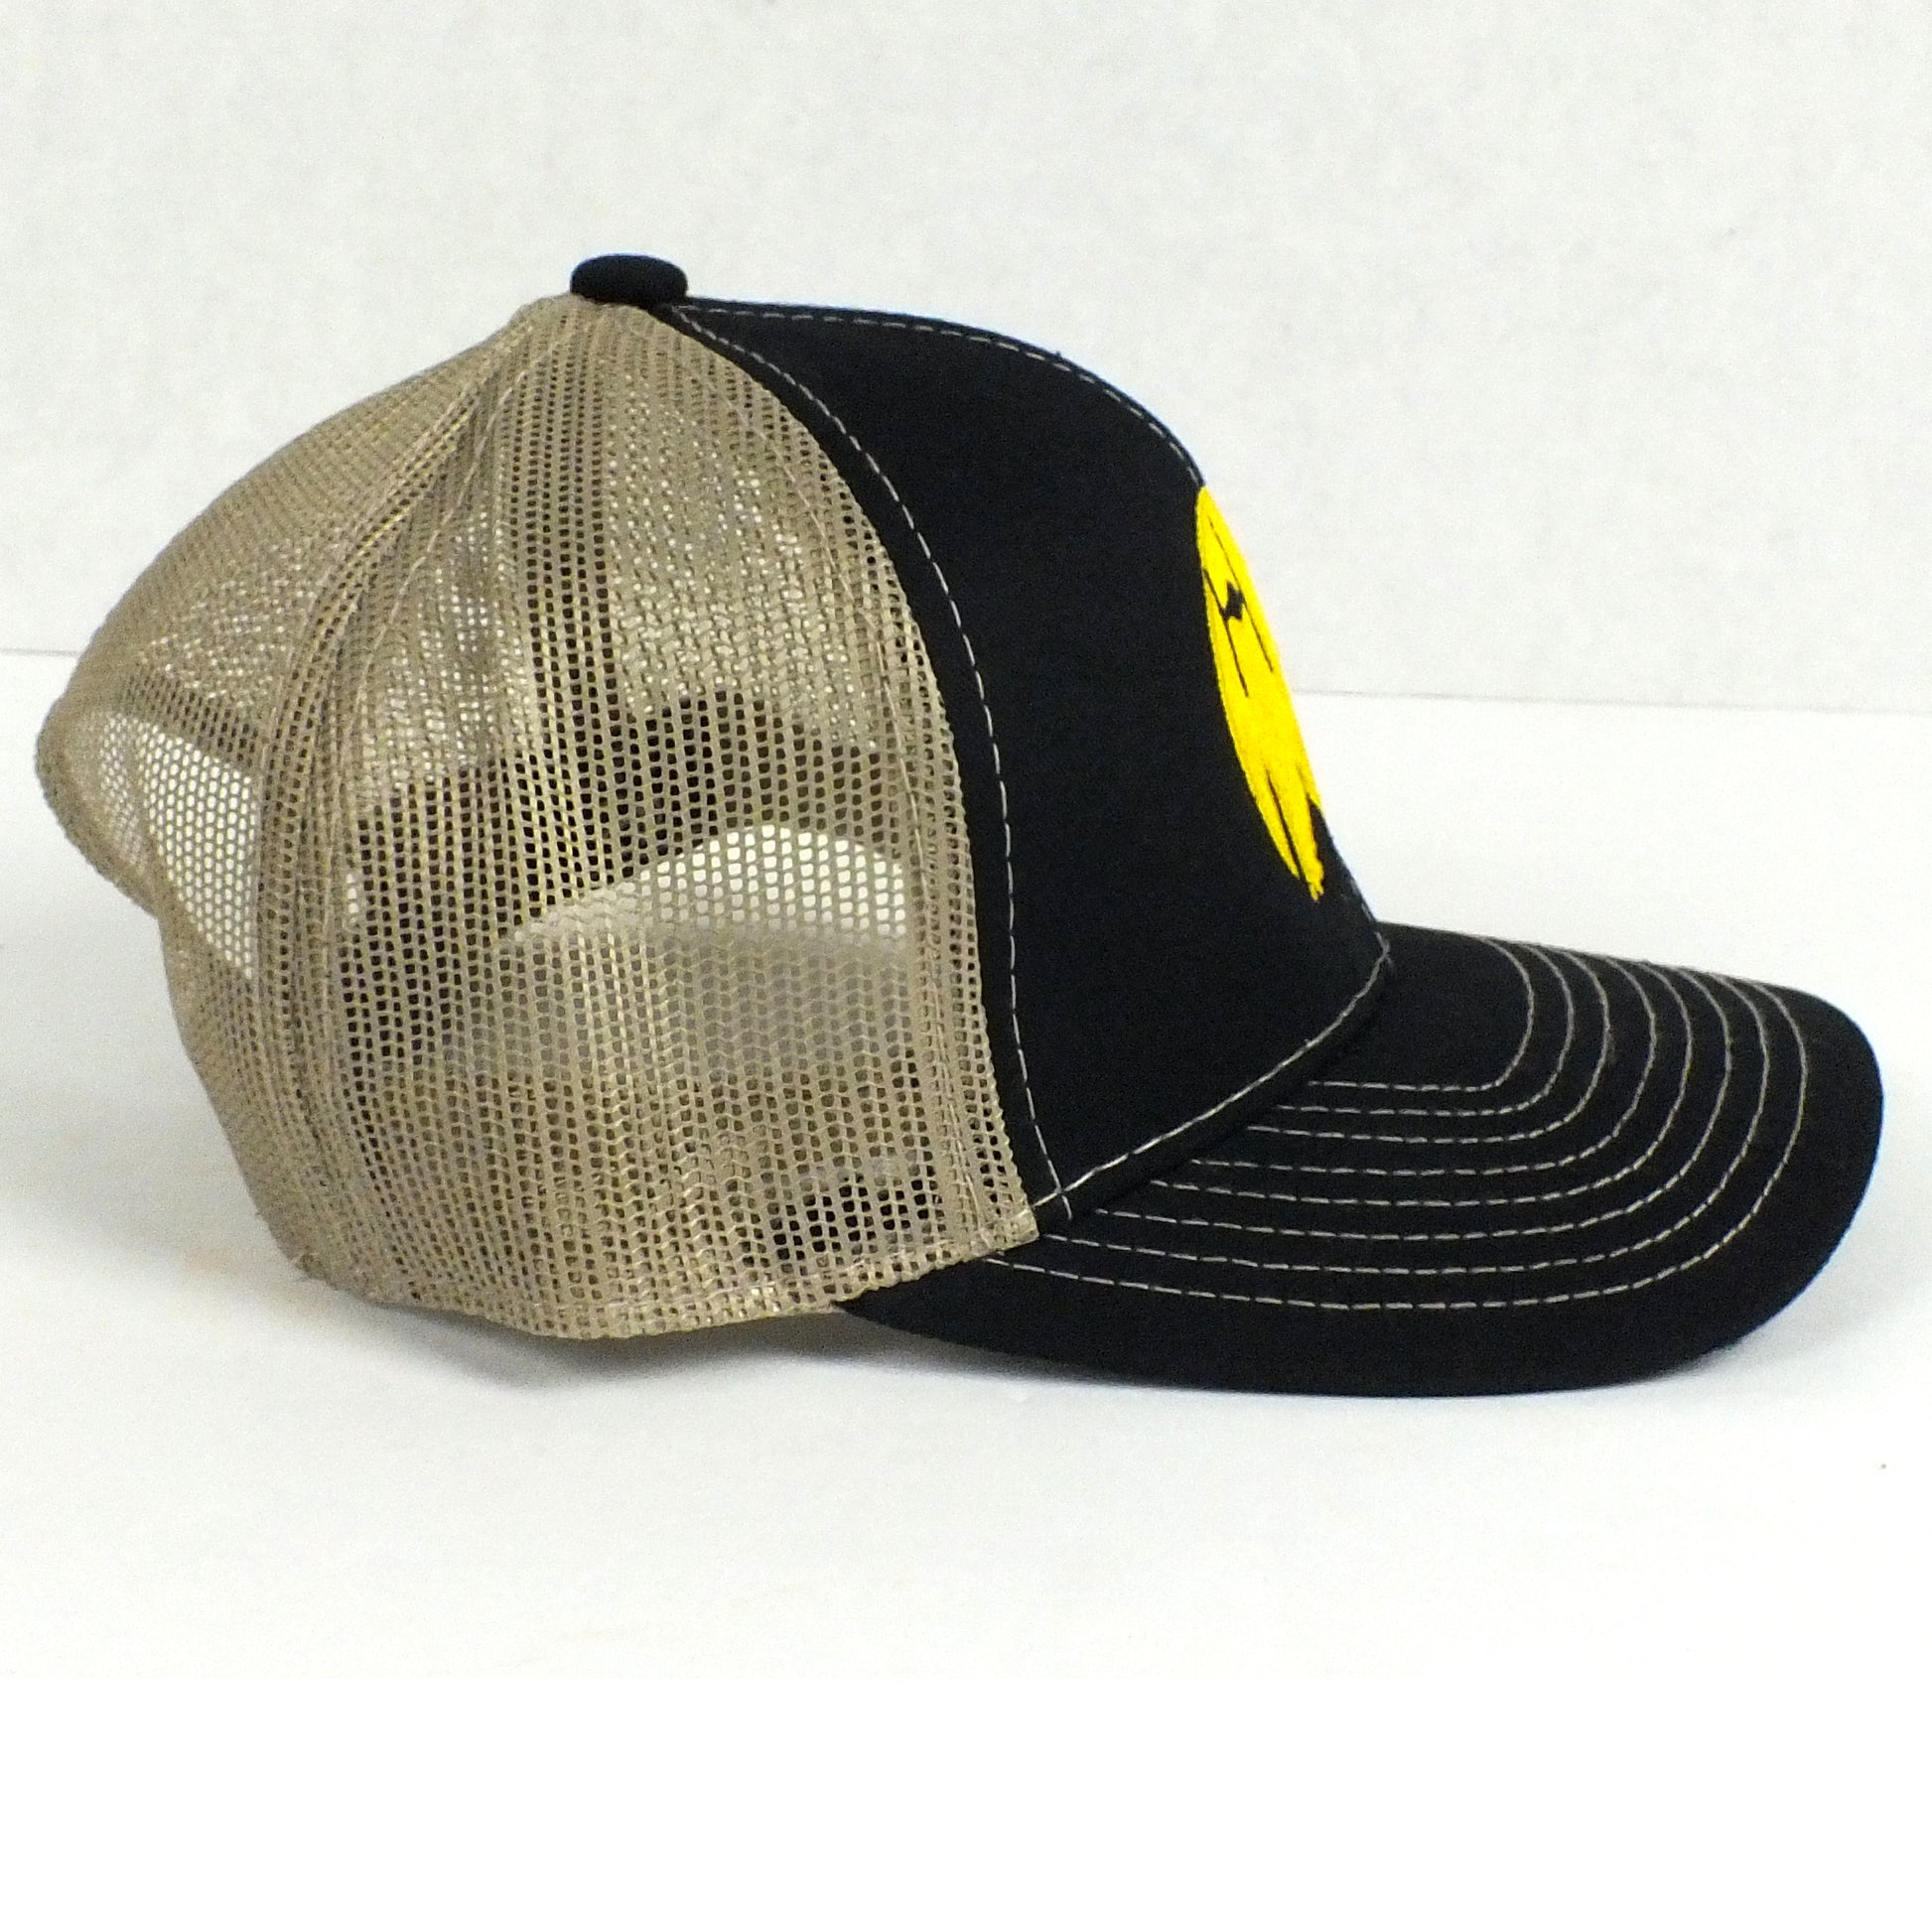 District Trucker Hat - Black